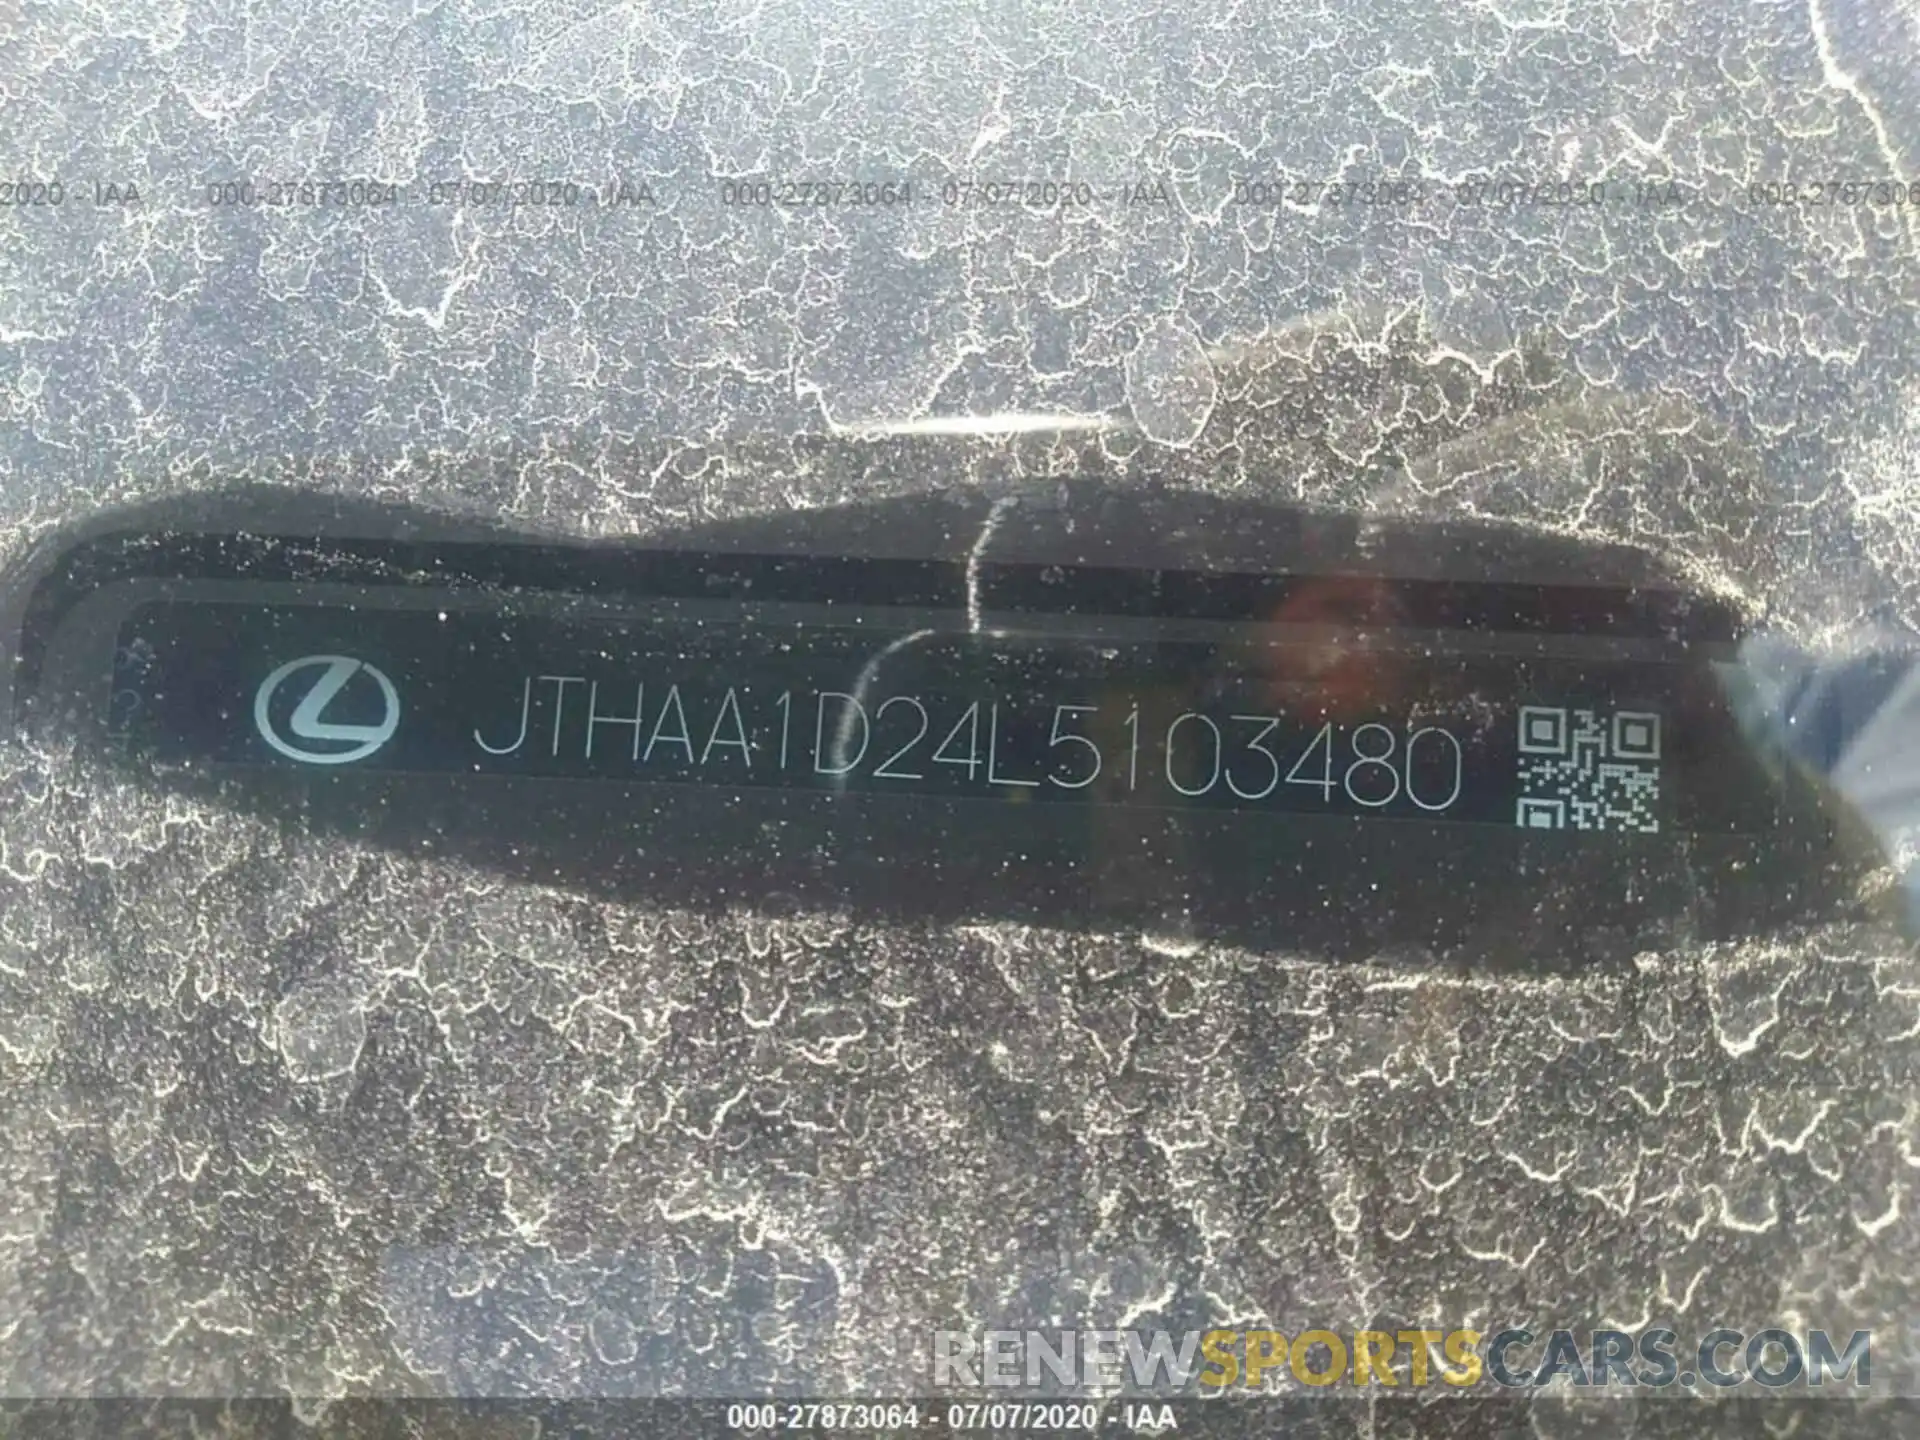 9 Photograph of a damaged car JTHAA1D24L5103480 LEXUS IS 2020